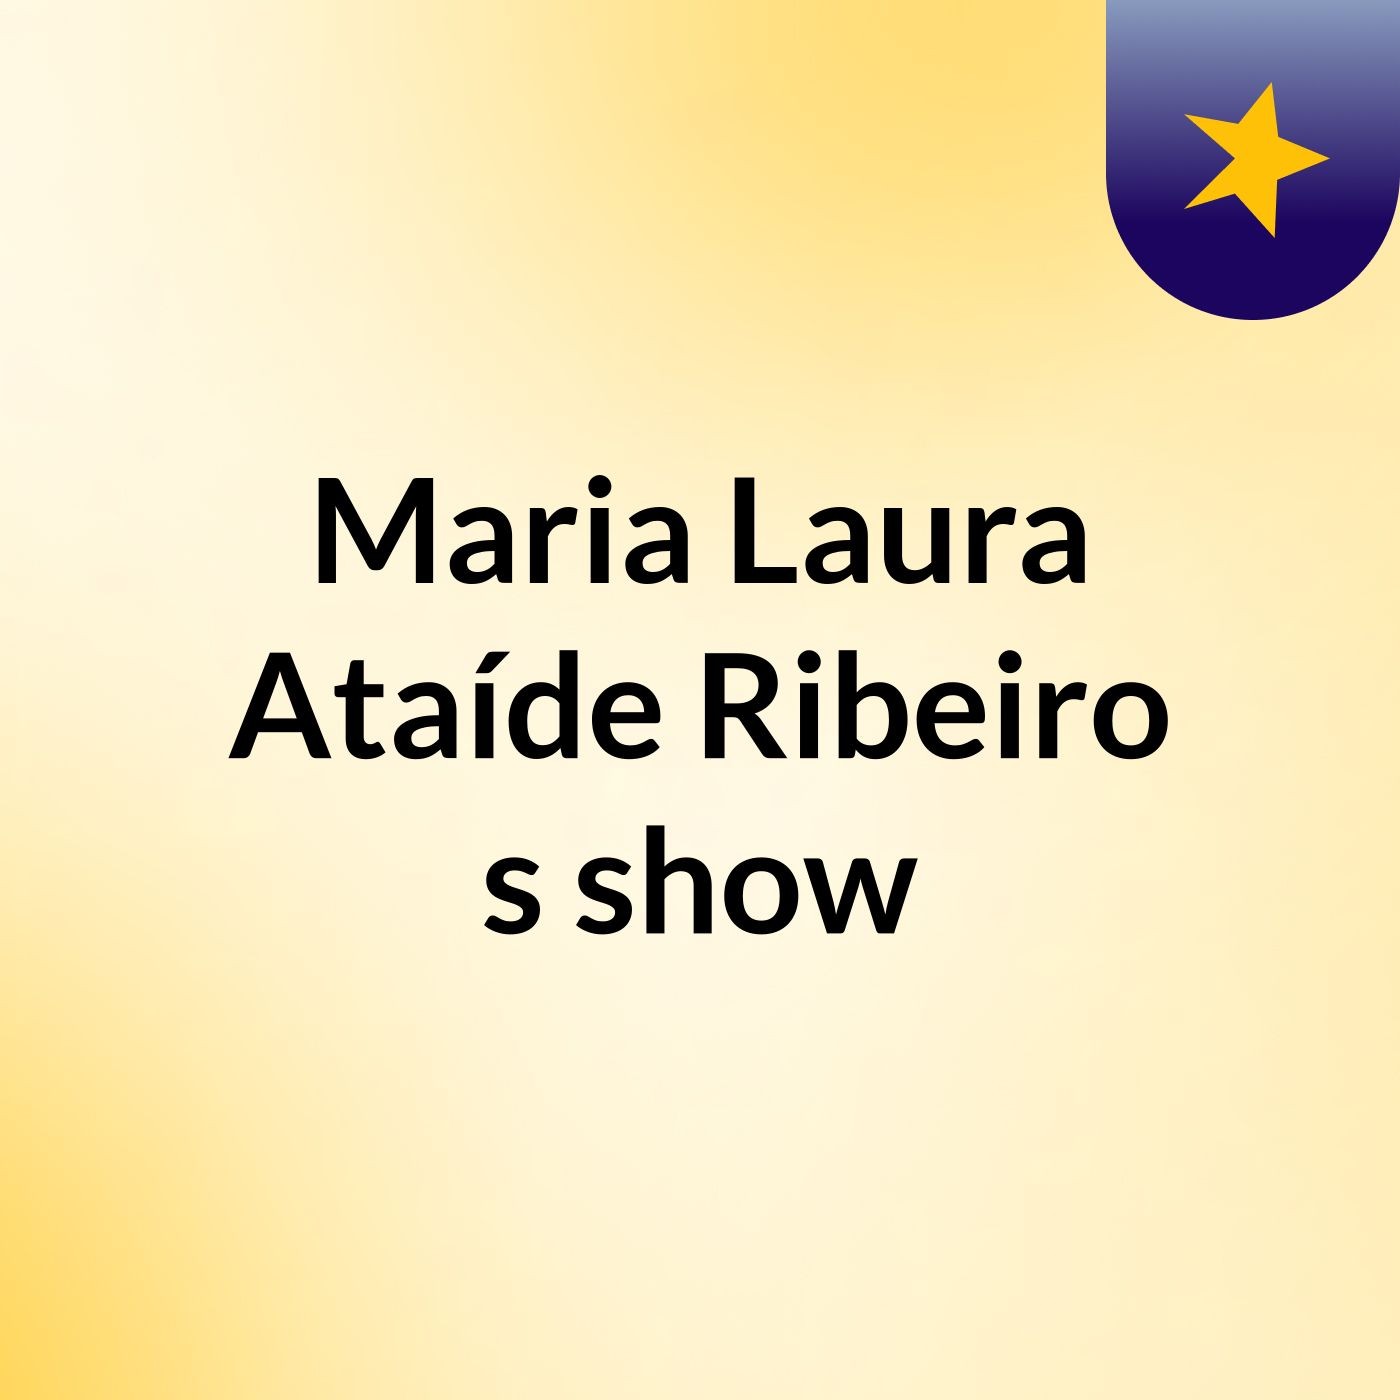 Maria Laura Ataíde Ribeiro's show